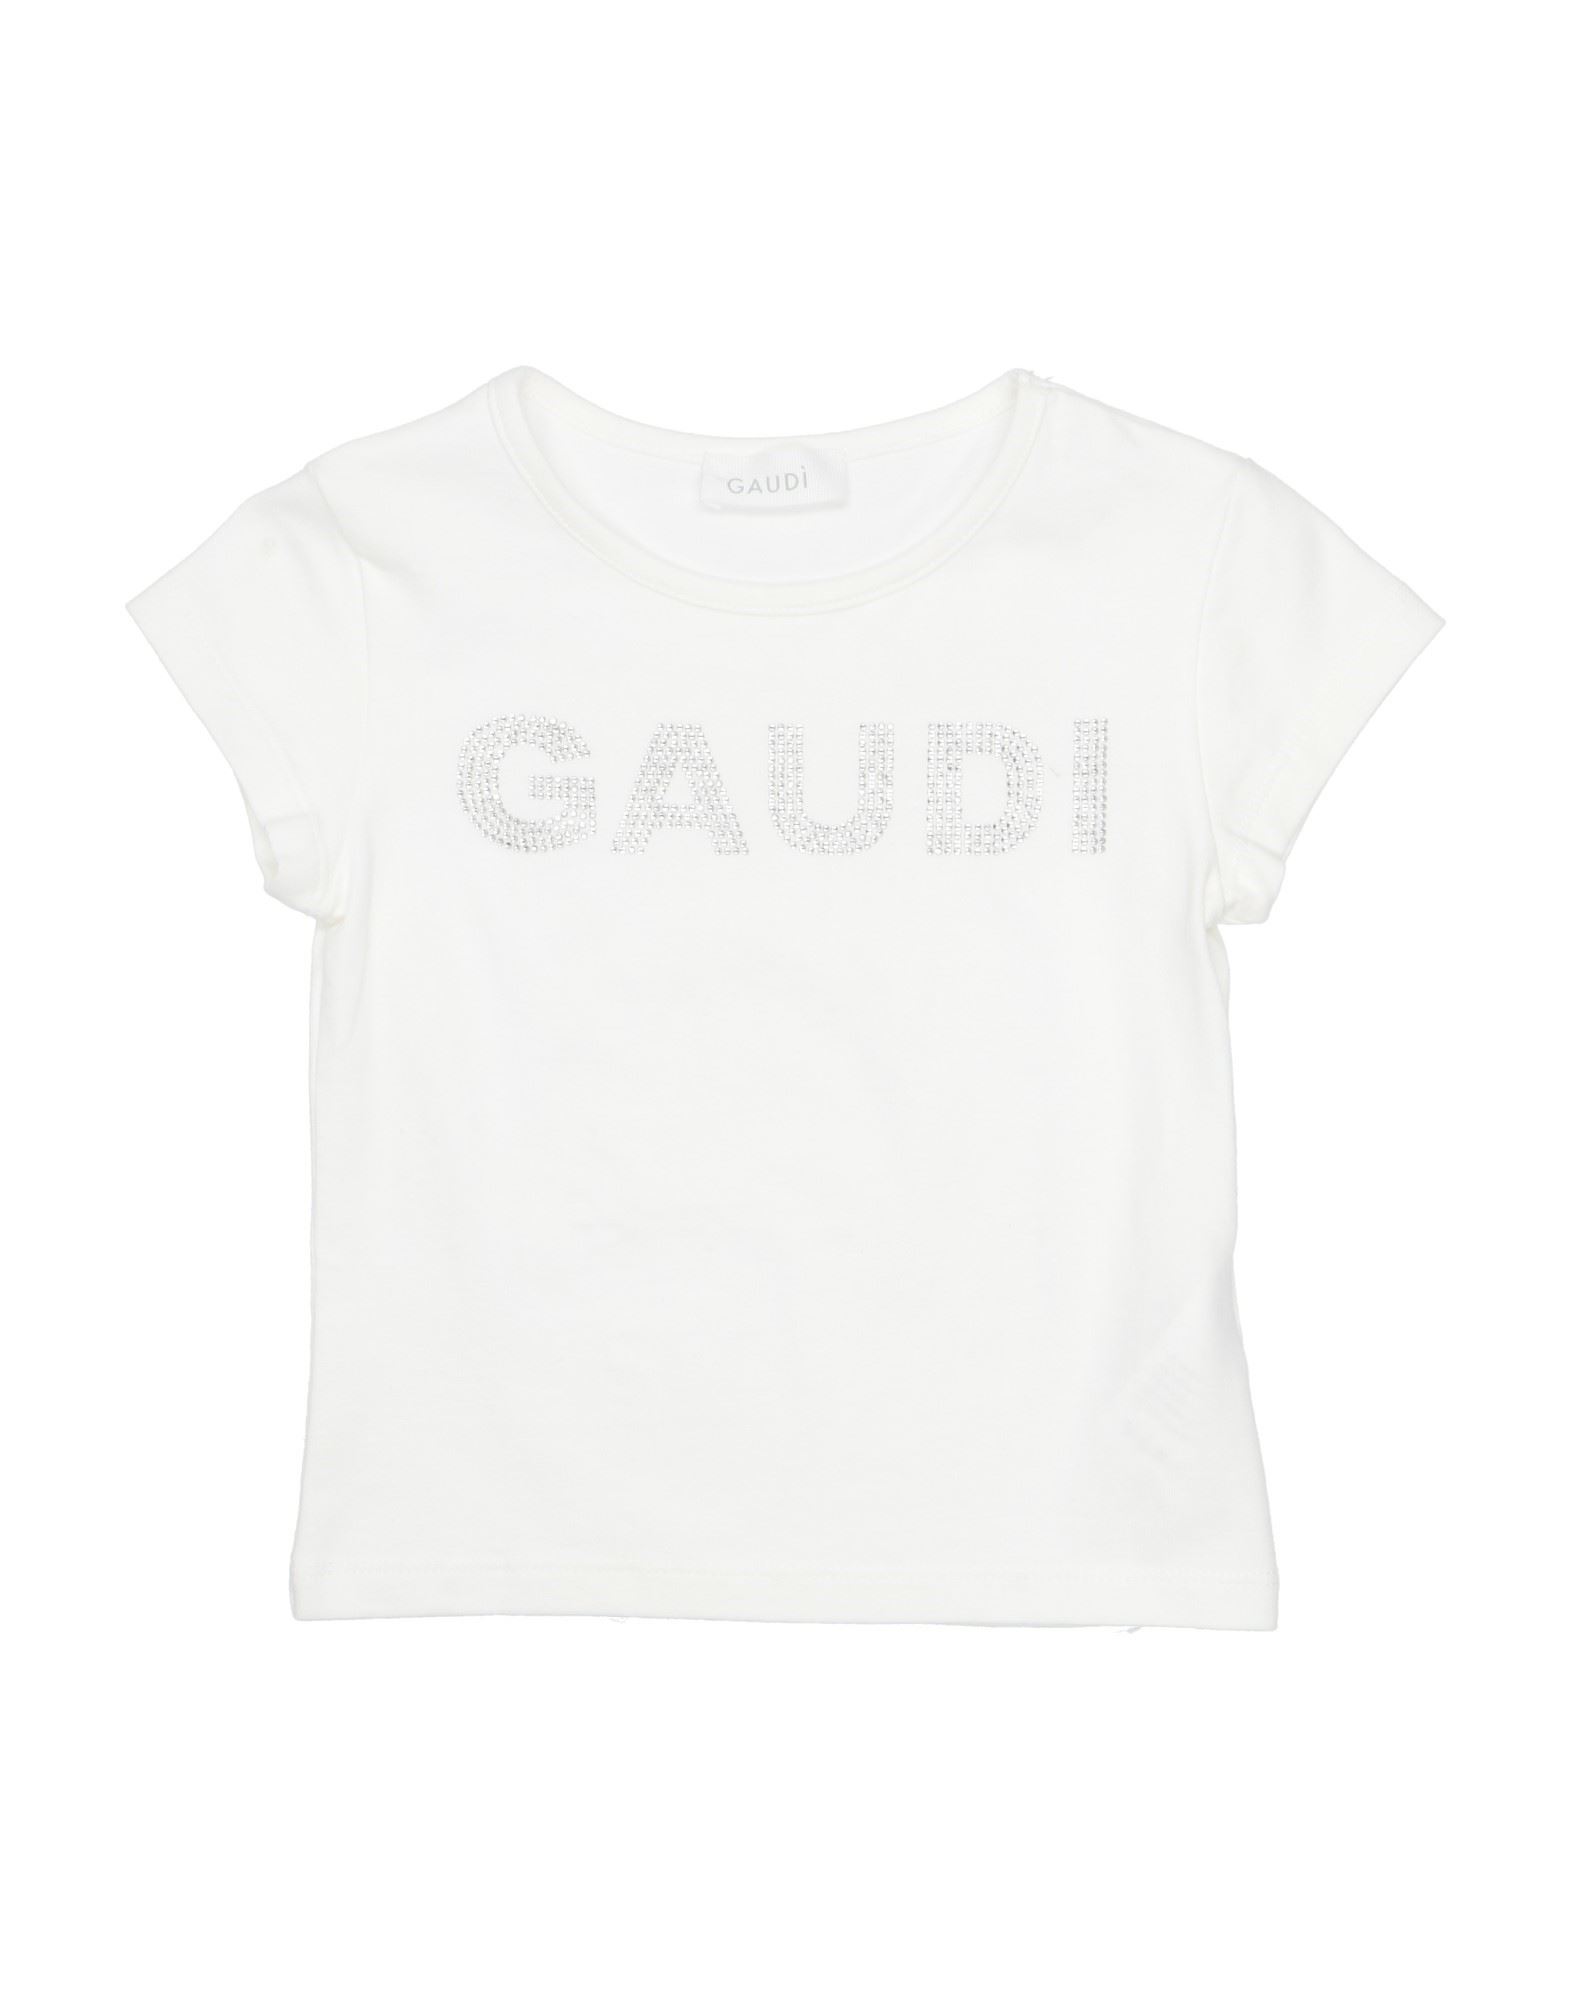 Gaudì Kids'  Toddler Girl T-shirt White Size 4 Cotton, Elastane